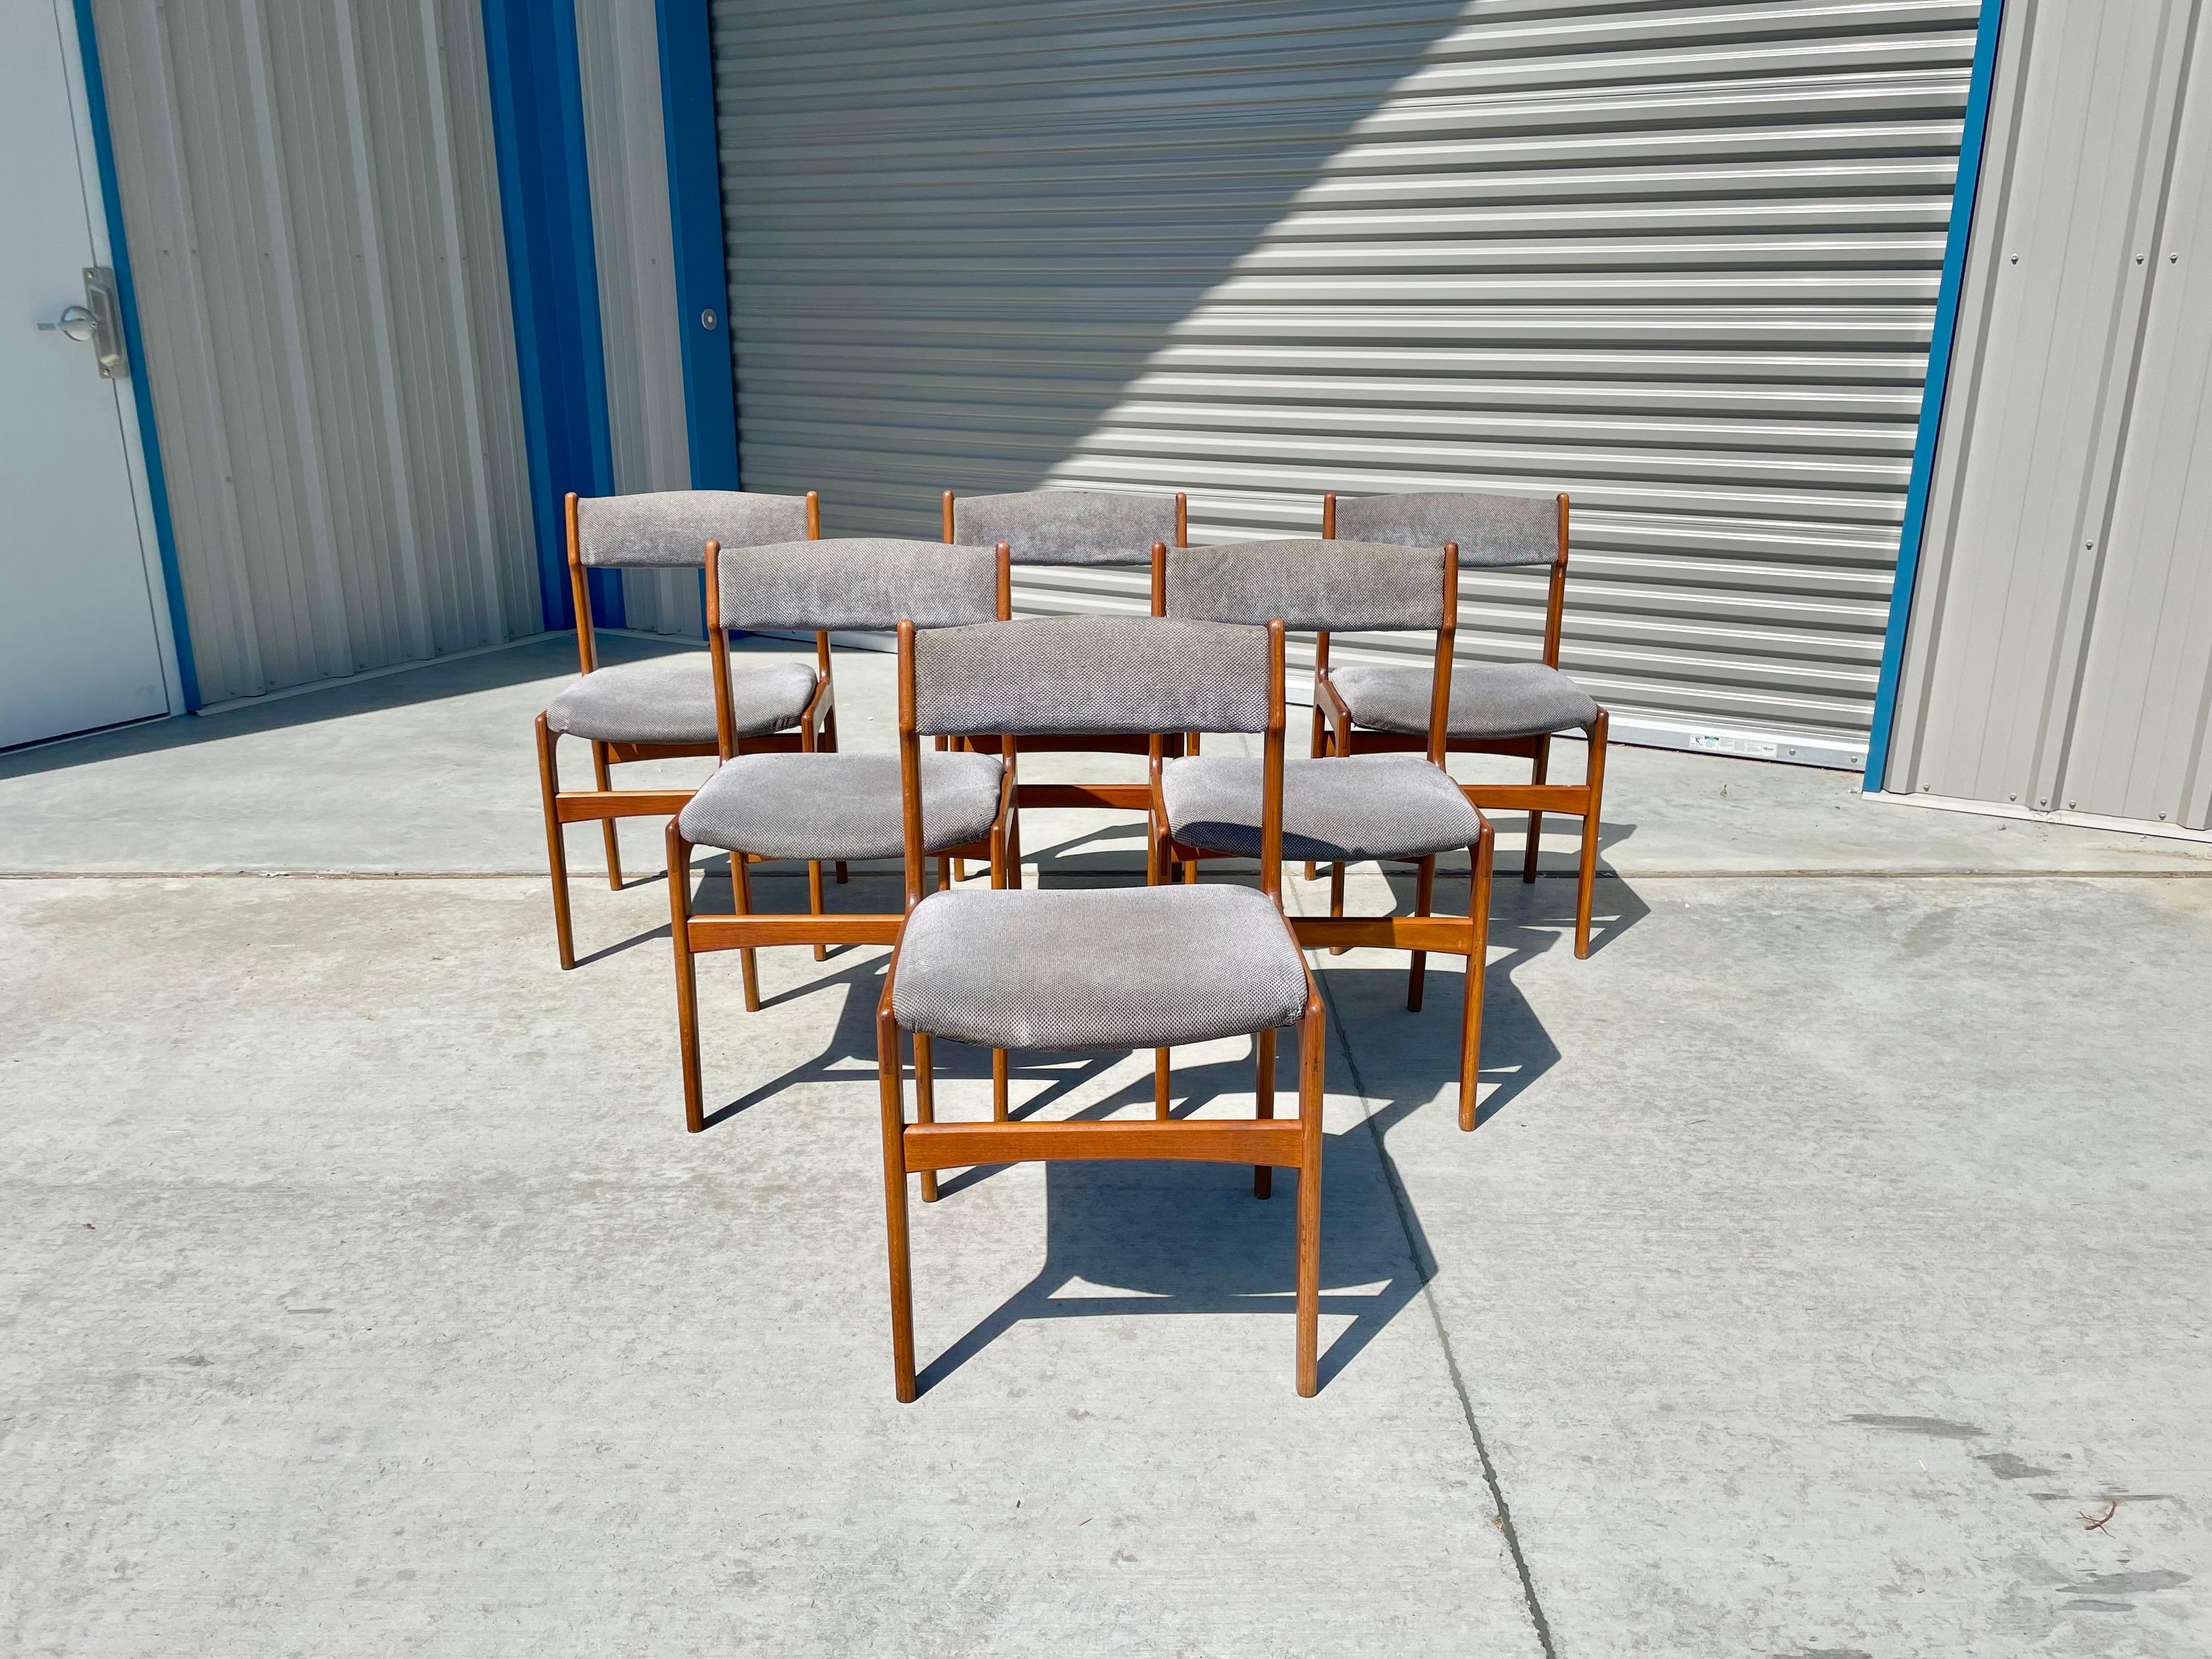 Les chaises de salle à manger danoises modernes en teck ont été conçues et fabriquées au Danemark vers les années 1960. Ces superbes chaises de salle à manger sont dotées d'une solide armature en teck, ce qui leur confère une allure raffinée et